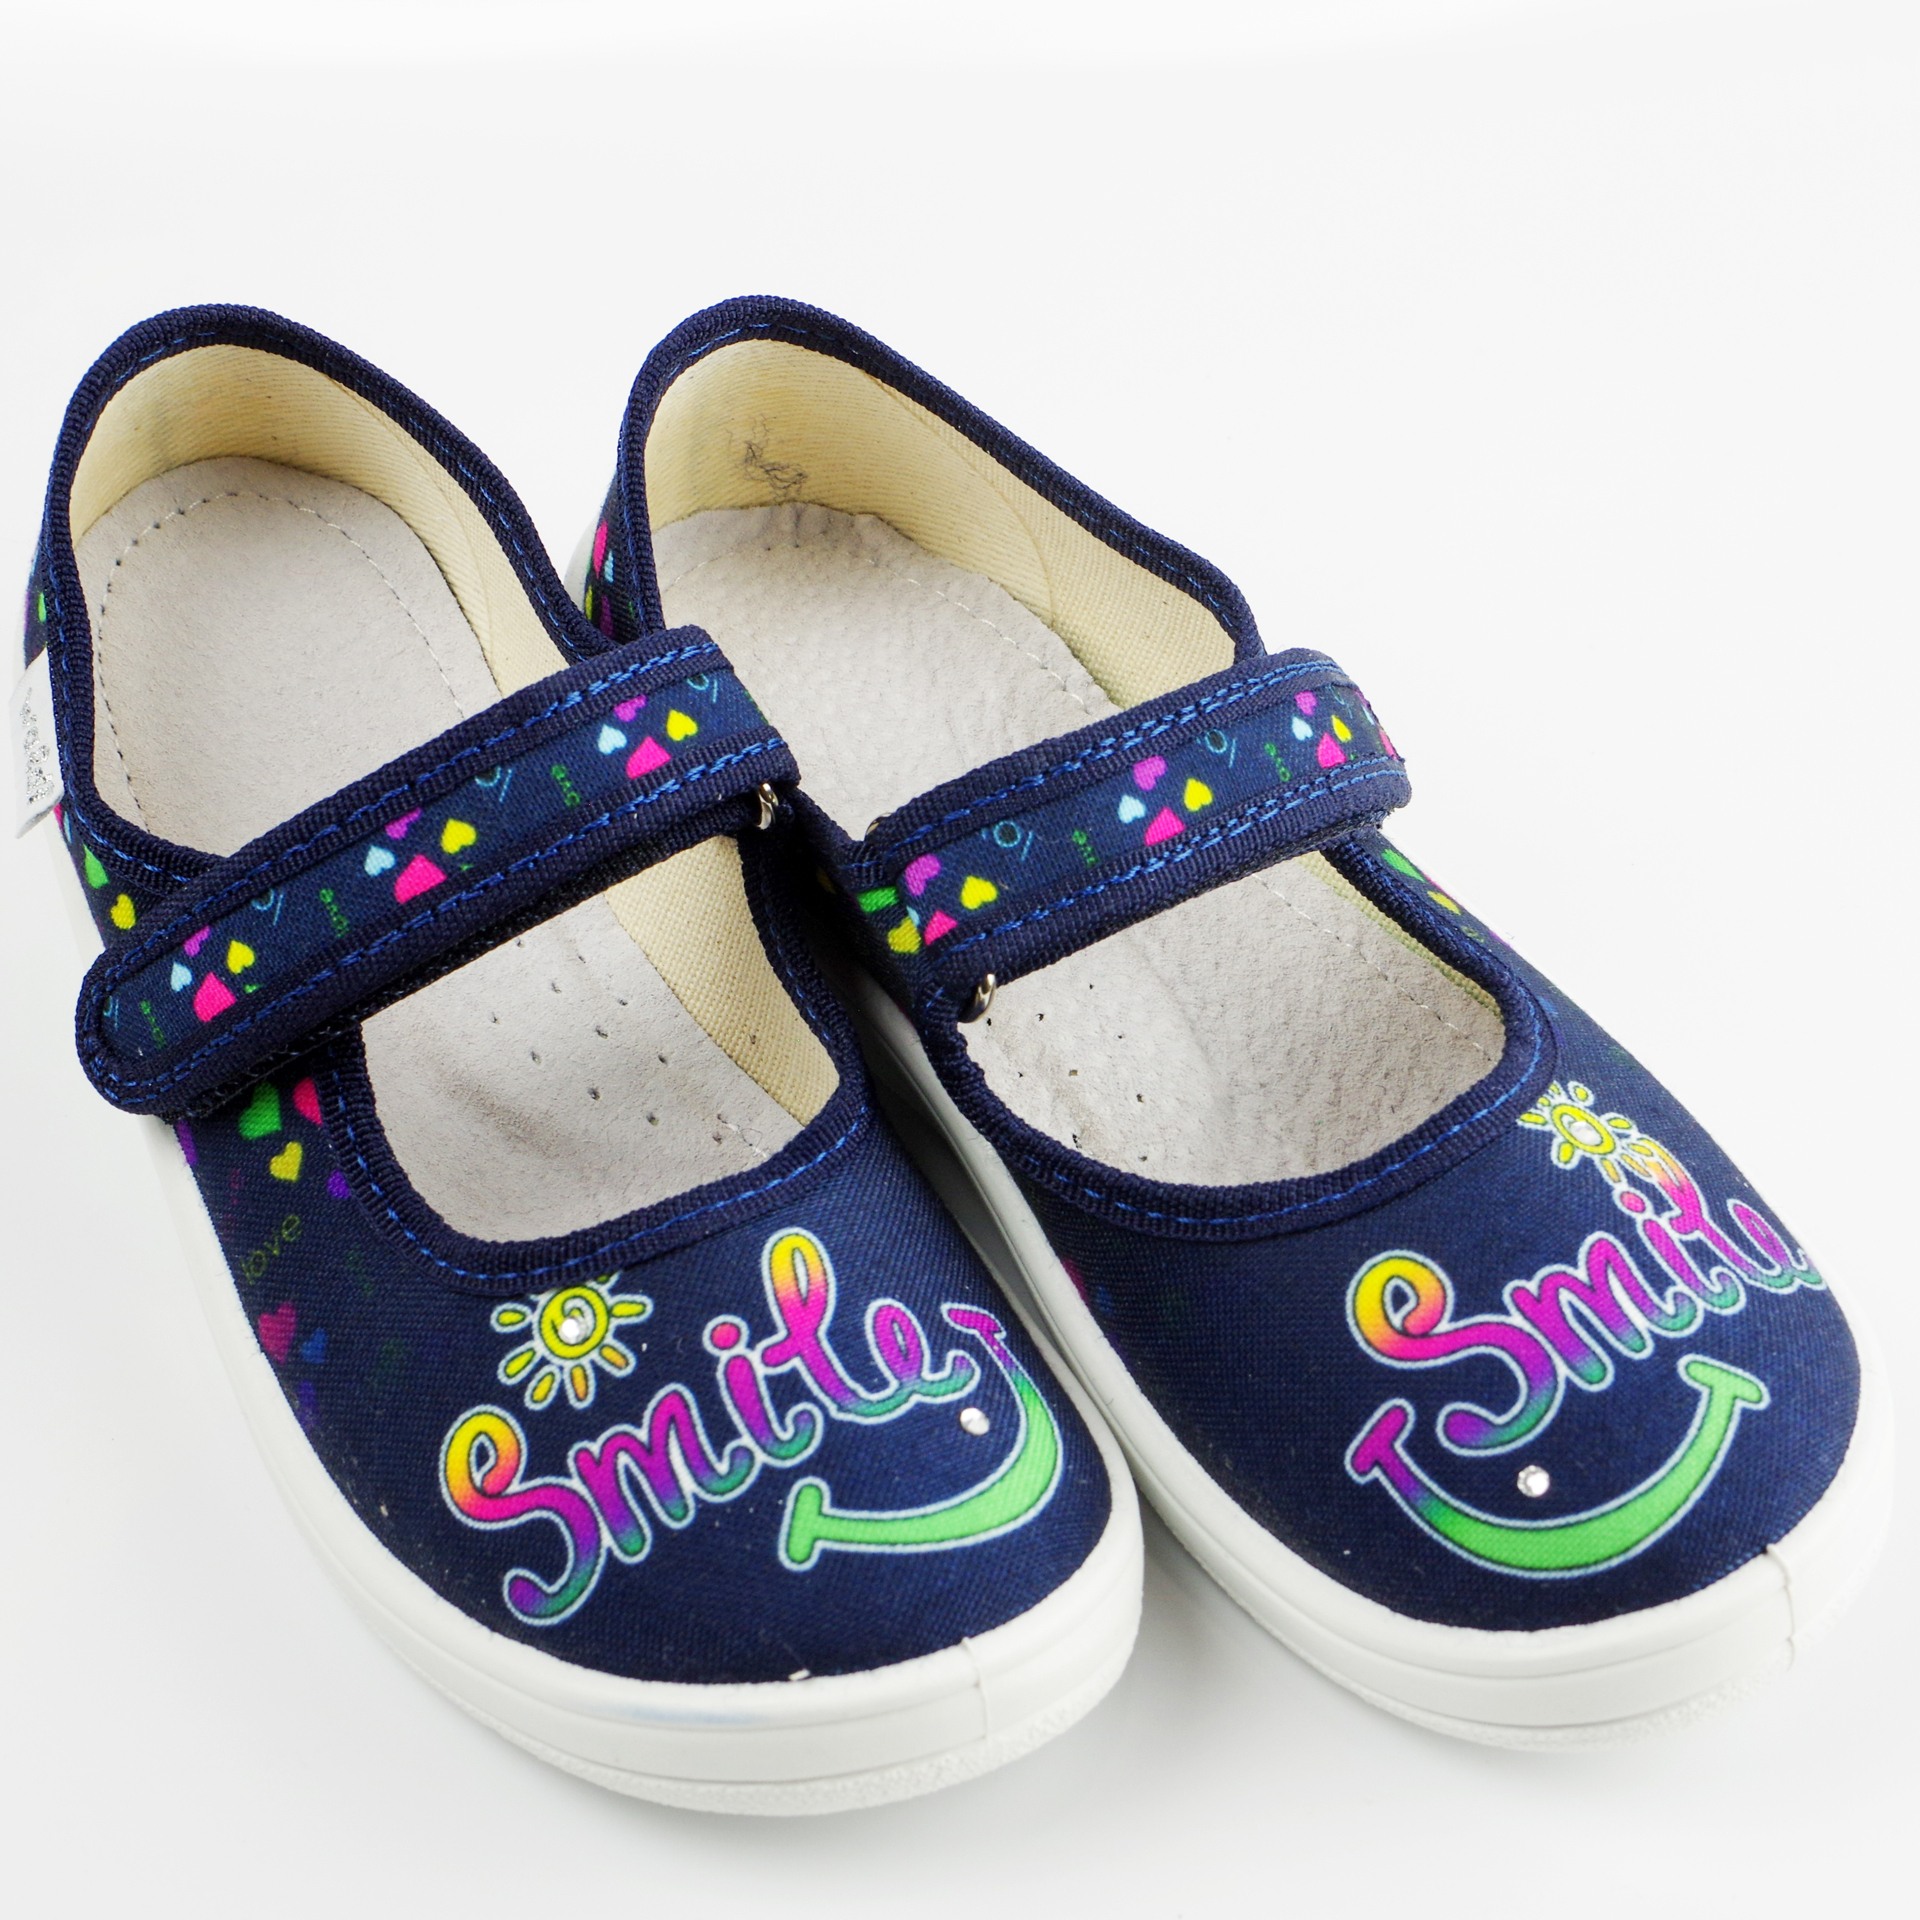 Текстильная обувь для девочек Тапочки Smile (2170) цвет Синий 24-30 размеры – Sole Kids. Фото 2